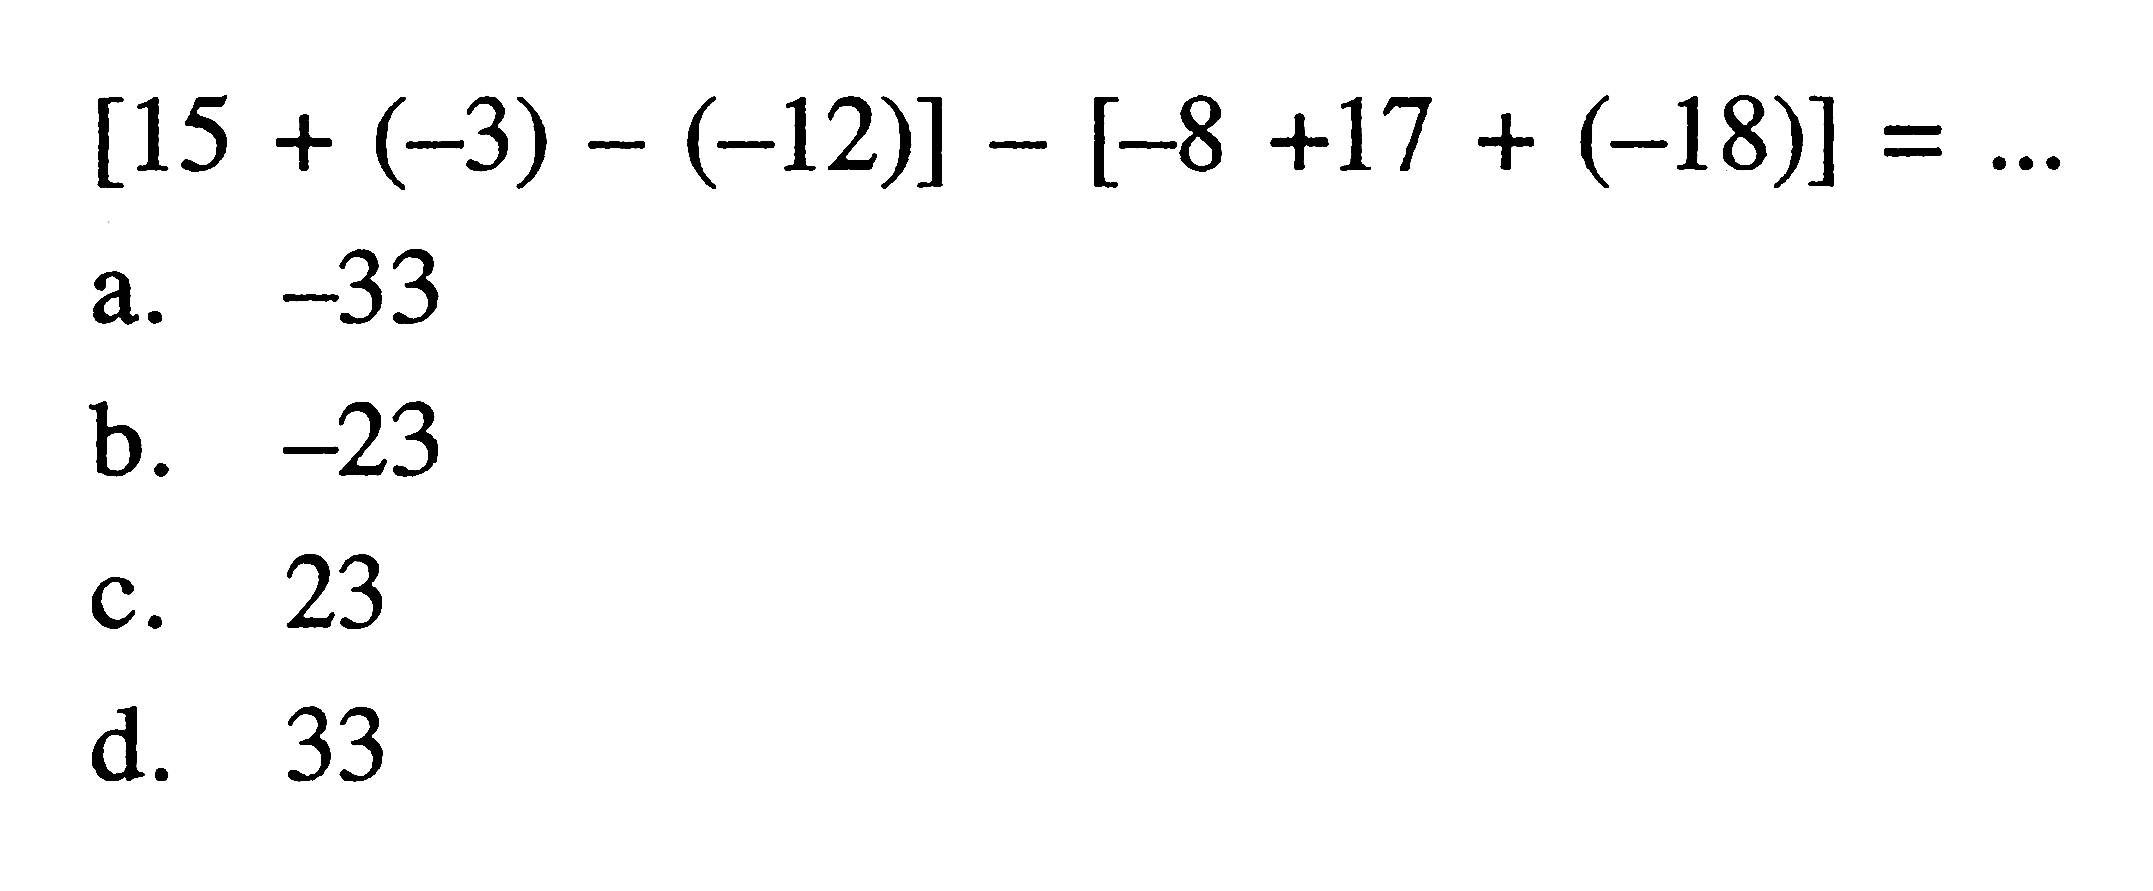 [15 + (-3) (-12)] - [-8 +17 + (-18)] =